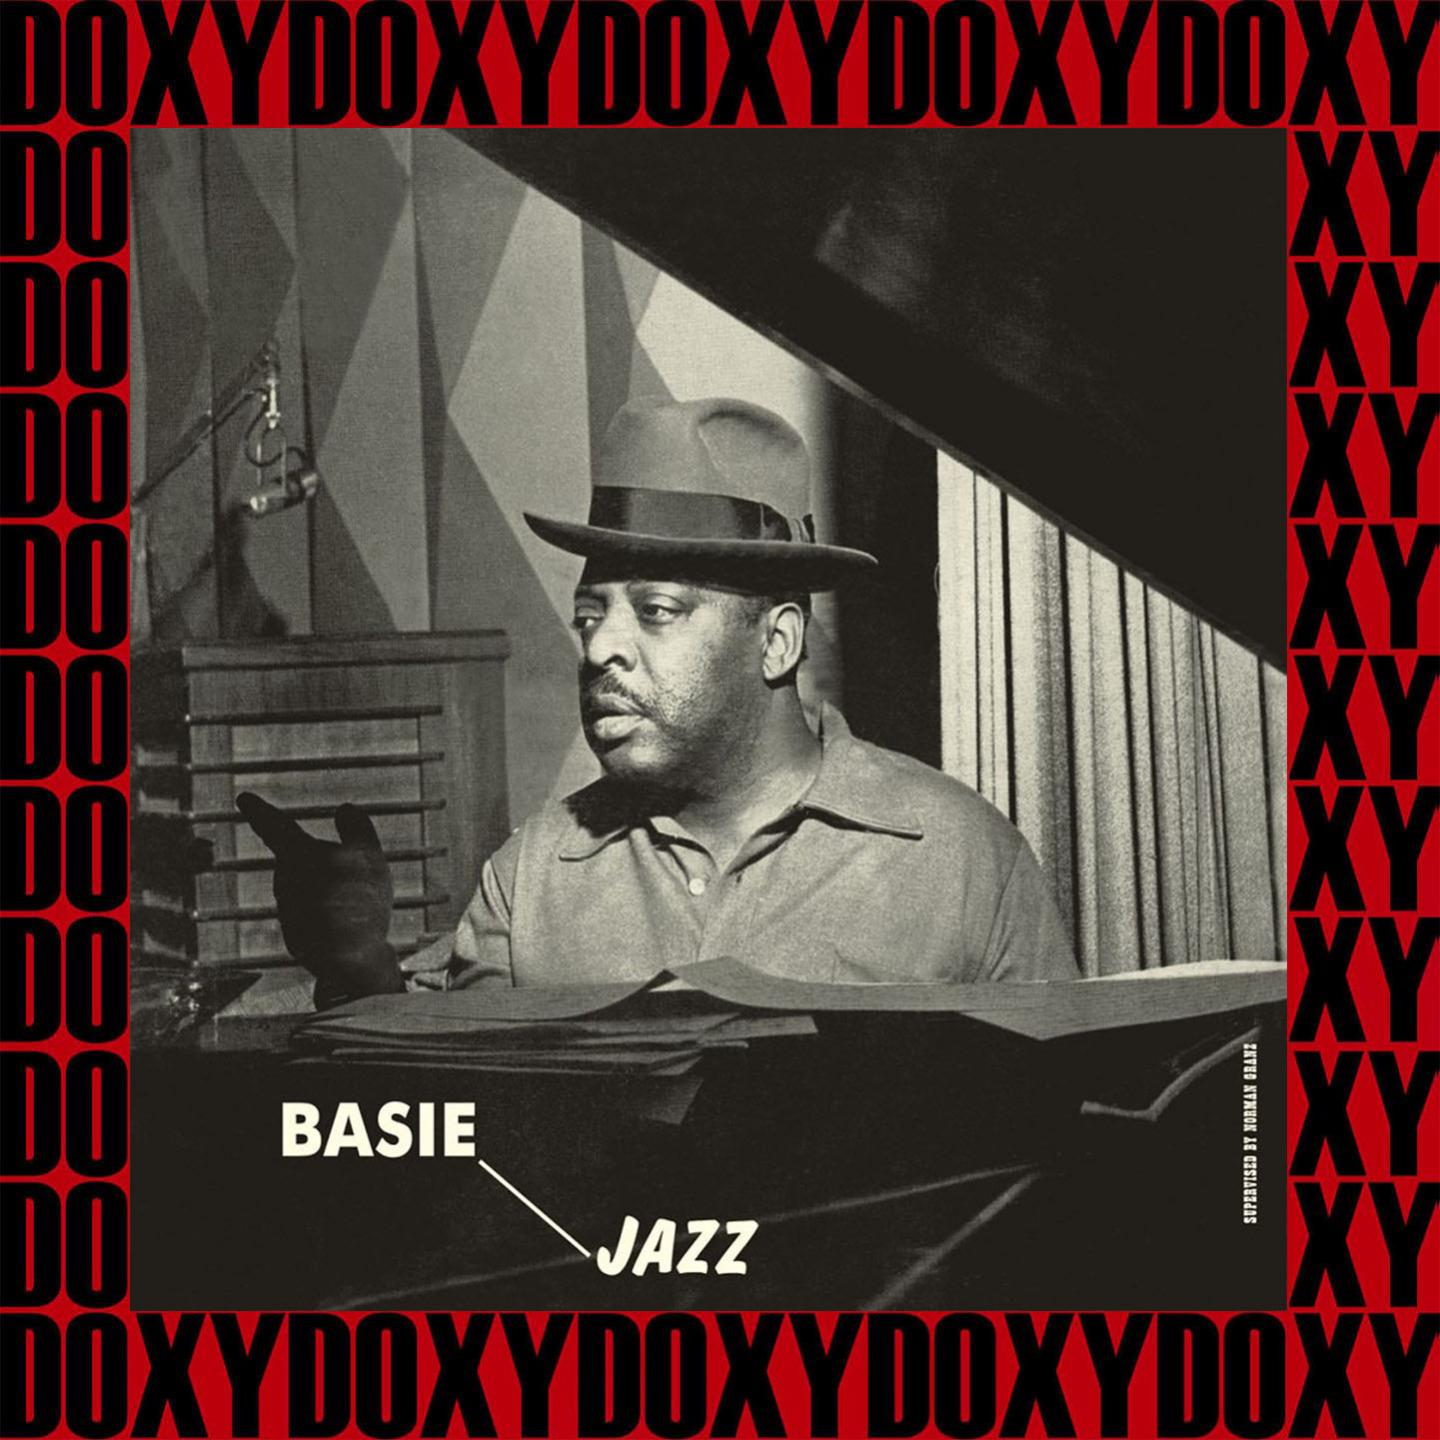 Basie Jazz (Remastered Version) (Doxy Collection)